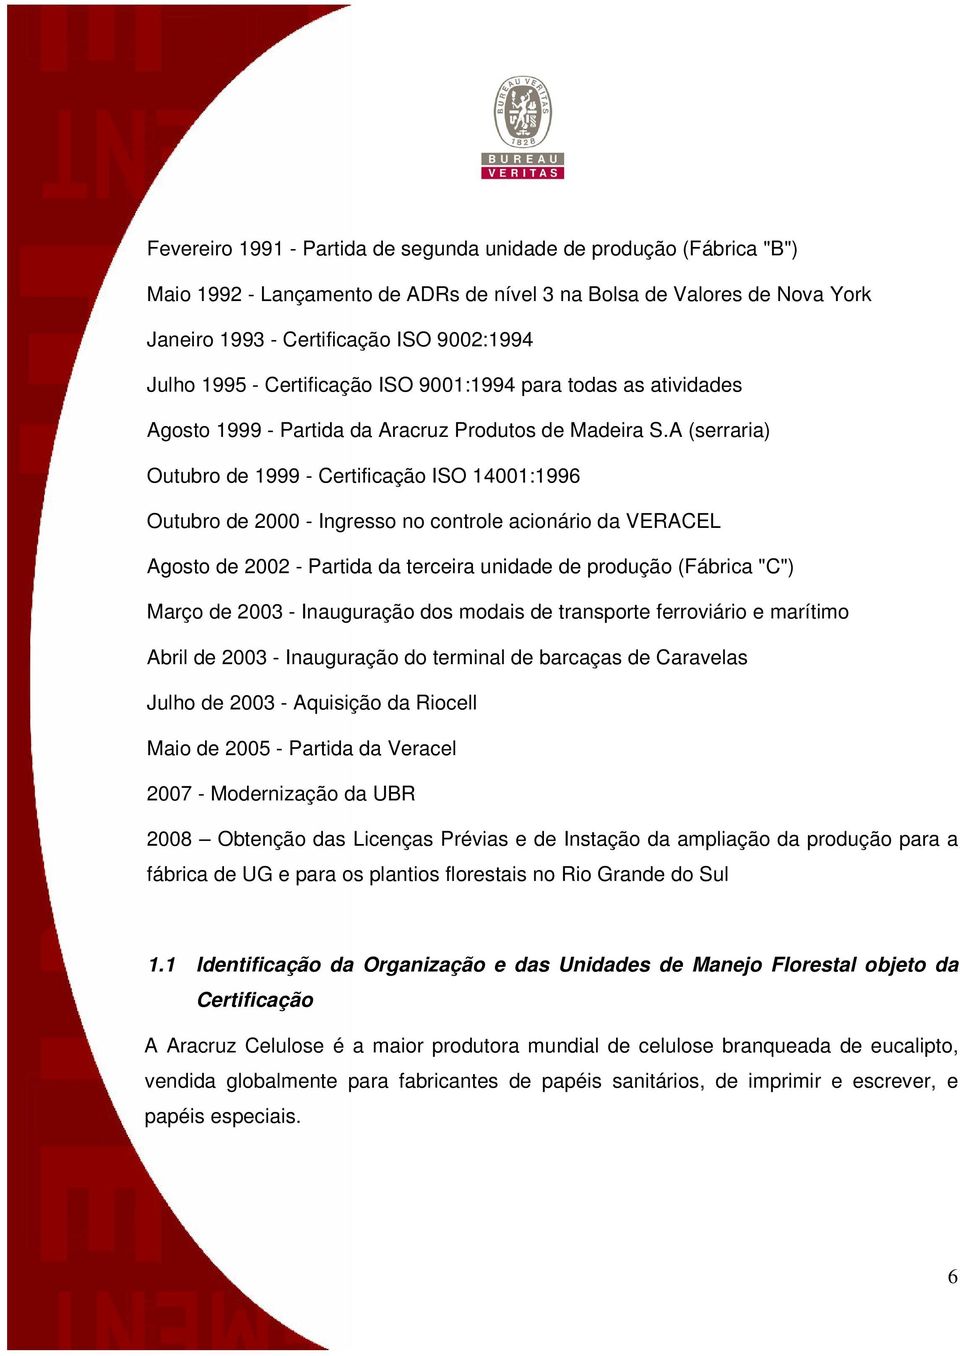 A (serraria) Outubro de 1999 - Certificação ISO 14001:1996 Outubro de 2000 - Ingresso no controle acionário da VERACEL Agosto de 2002 - Partida da terceira unidade de produção (Fábrica "C") Março de